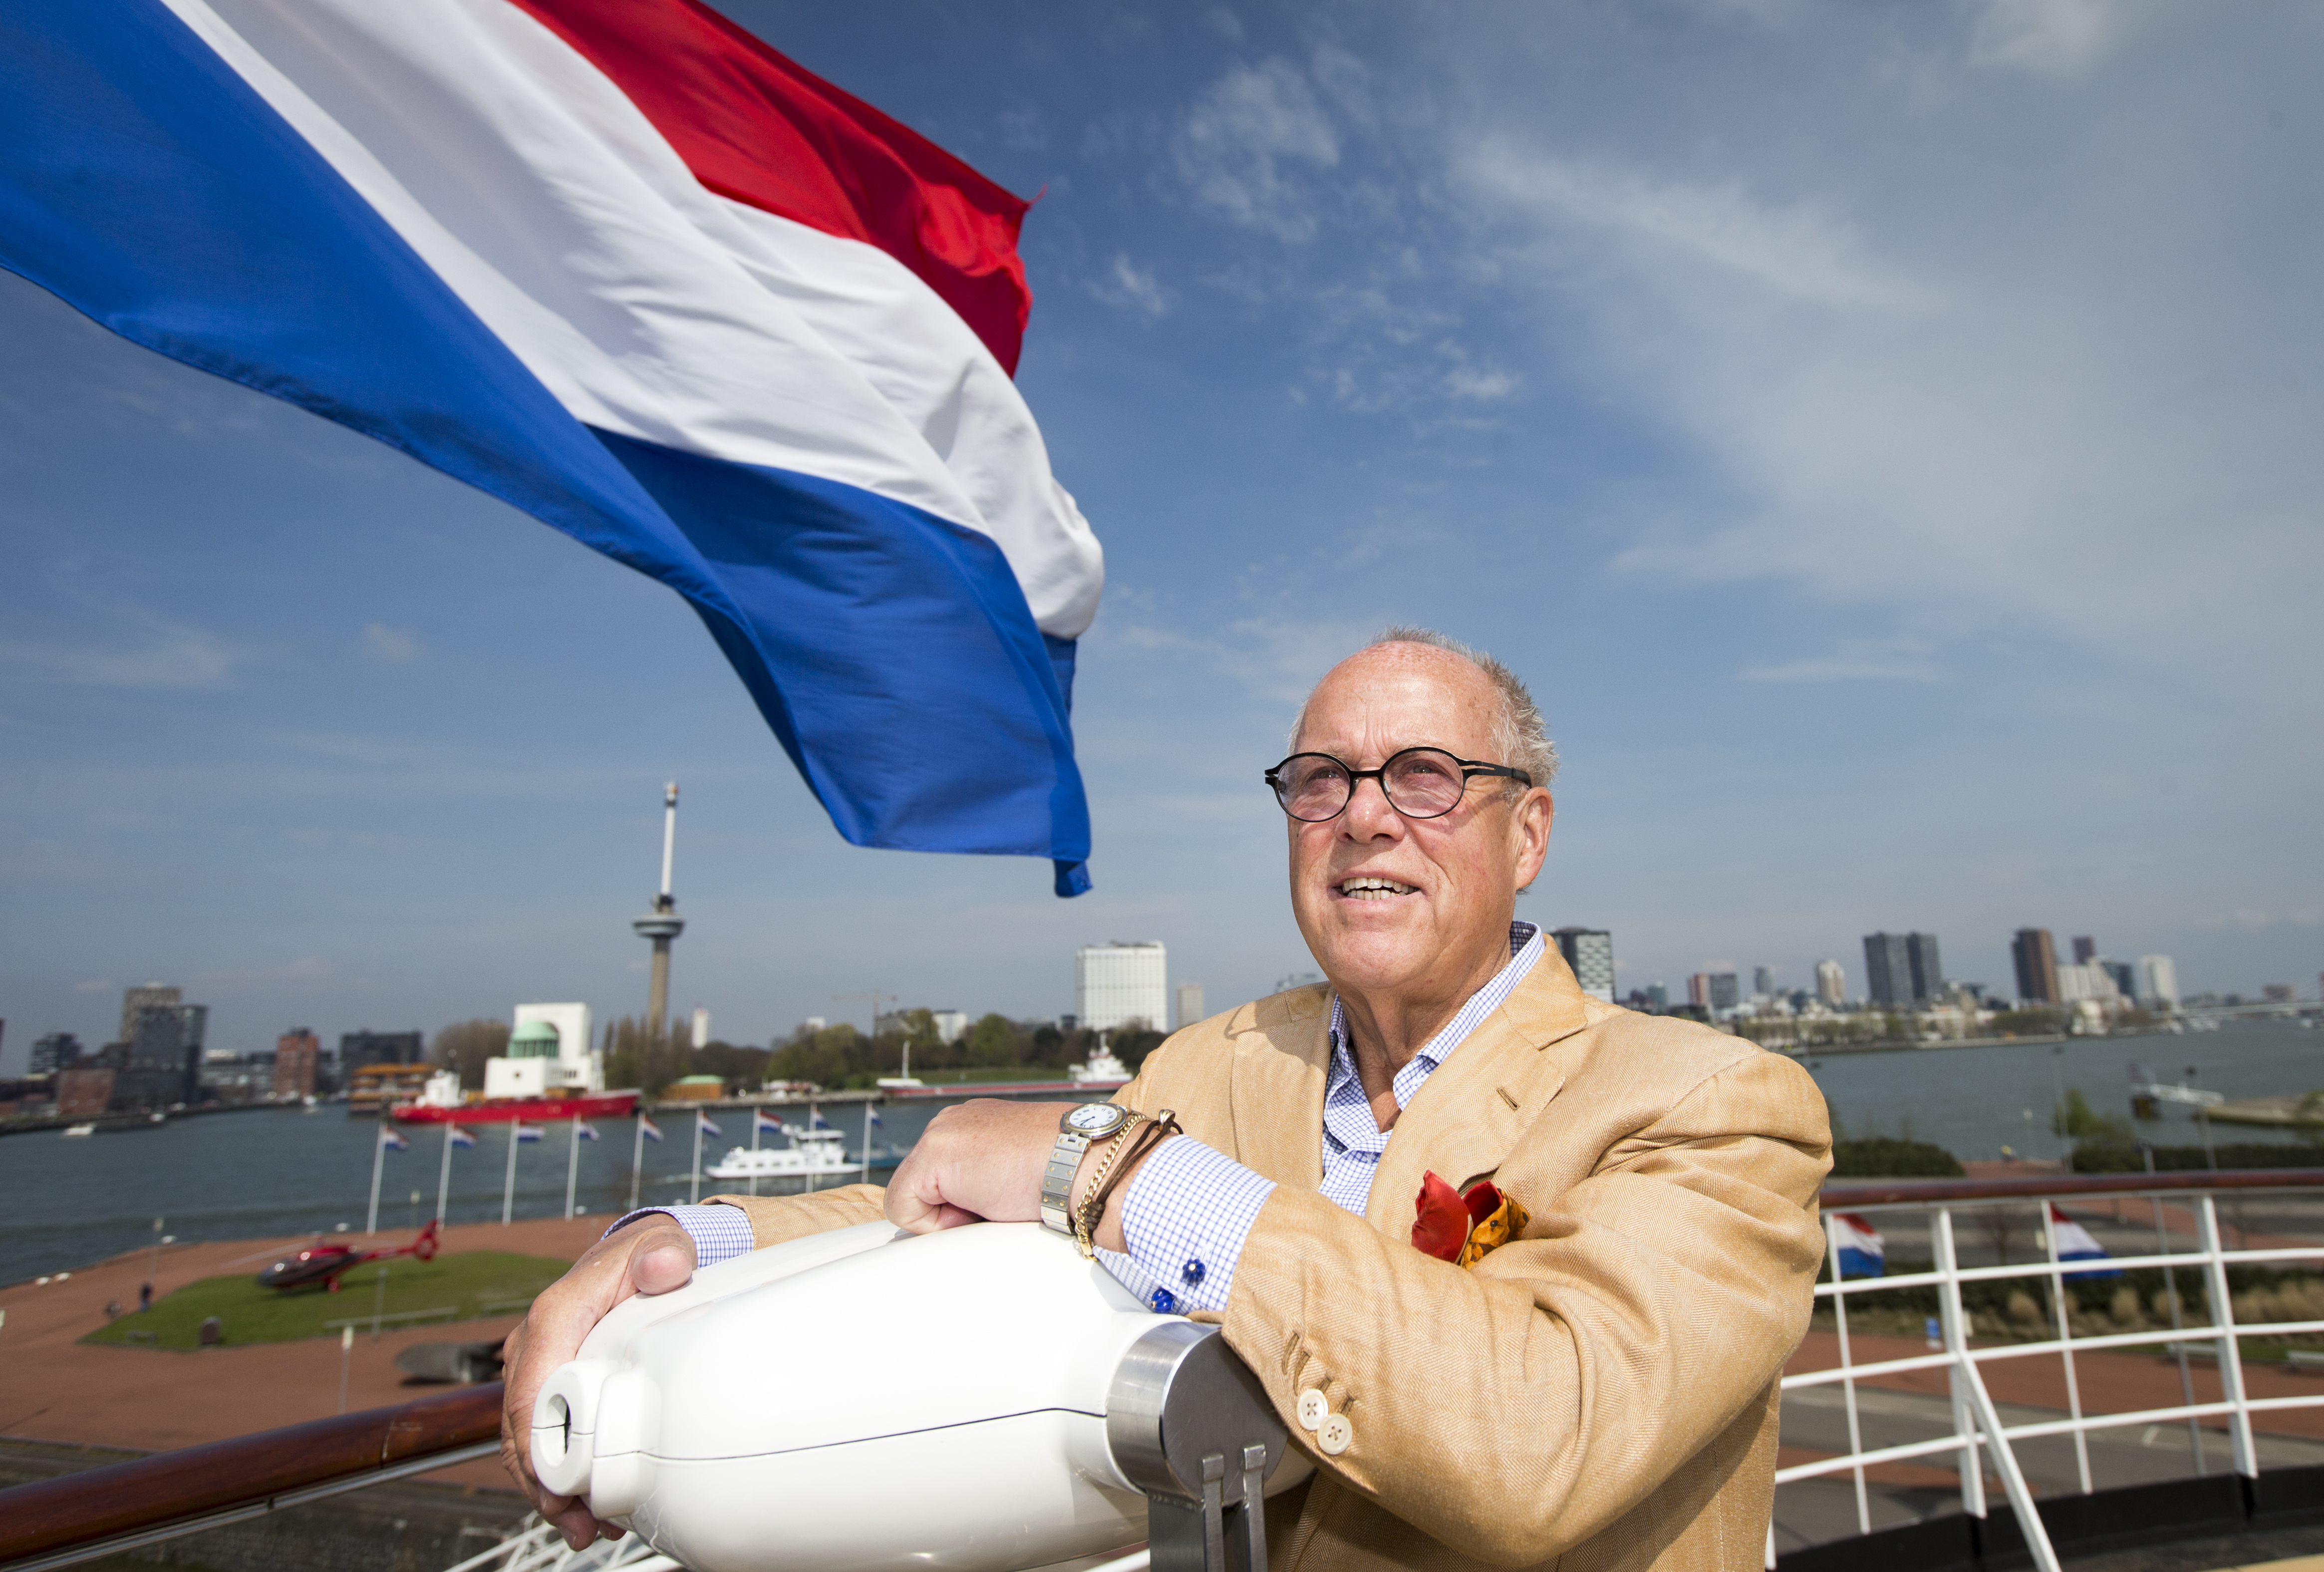 2016-04-14 13:03:25 ROTTERDAM - Sterrekok Joop Braakhekke tijdens de nationale opening van het aspergeseizoen op het voormalige Cruiseschip de SS Rotterdam. ANP JERRY LAMPEN